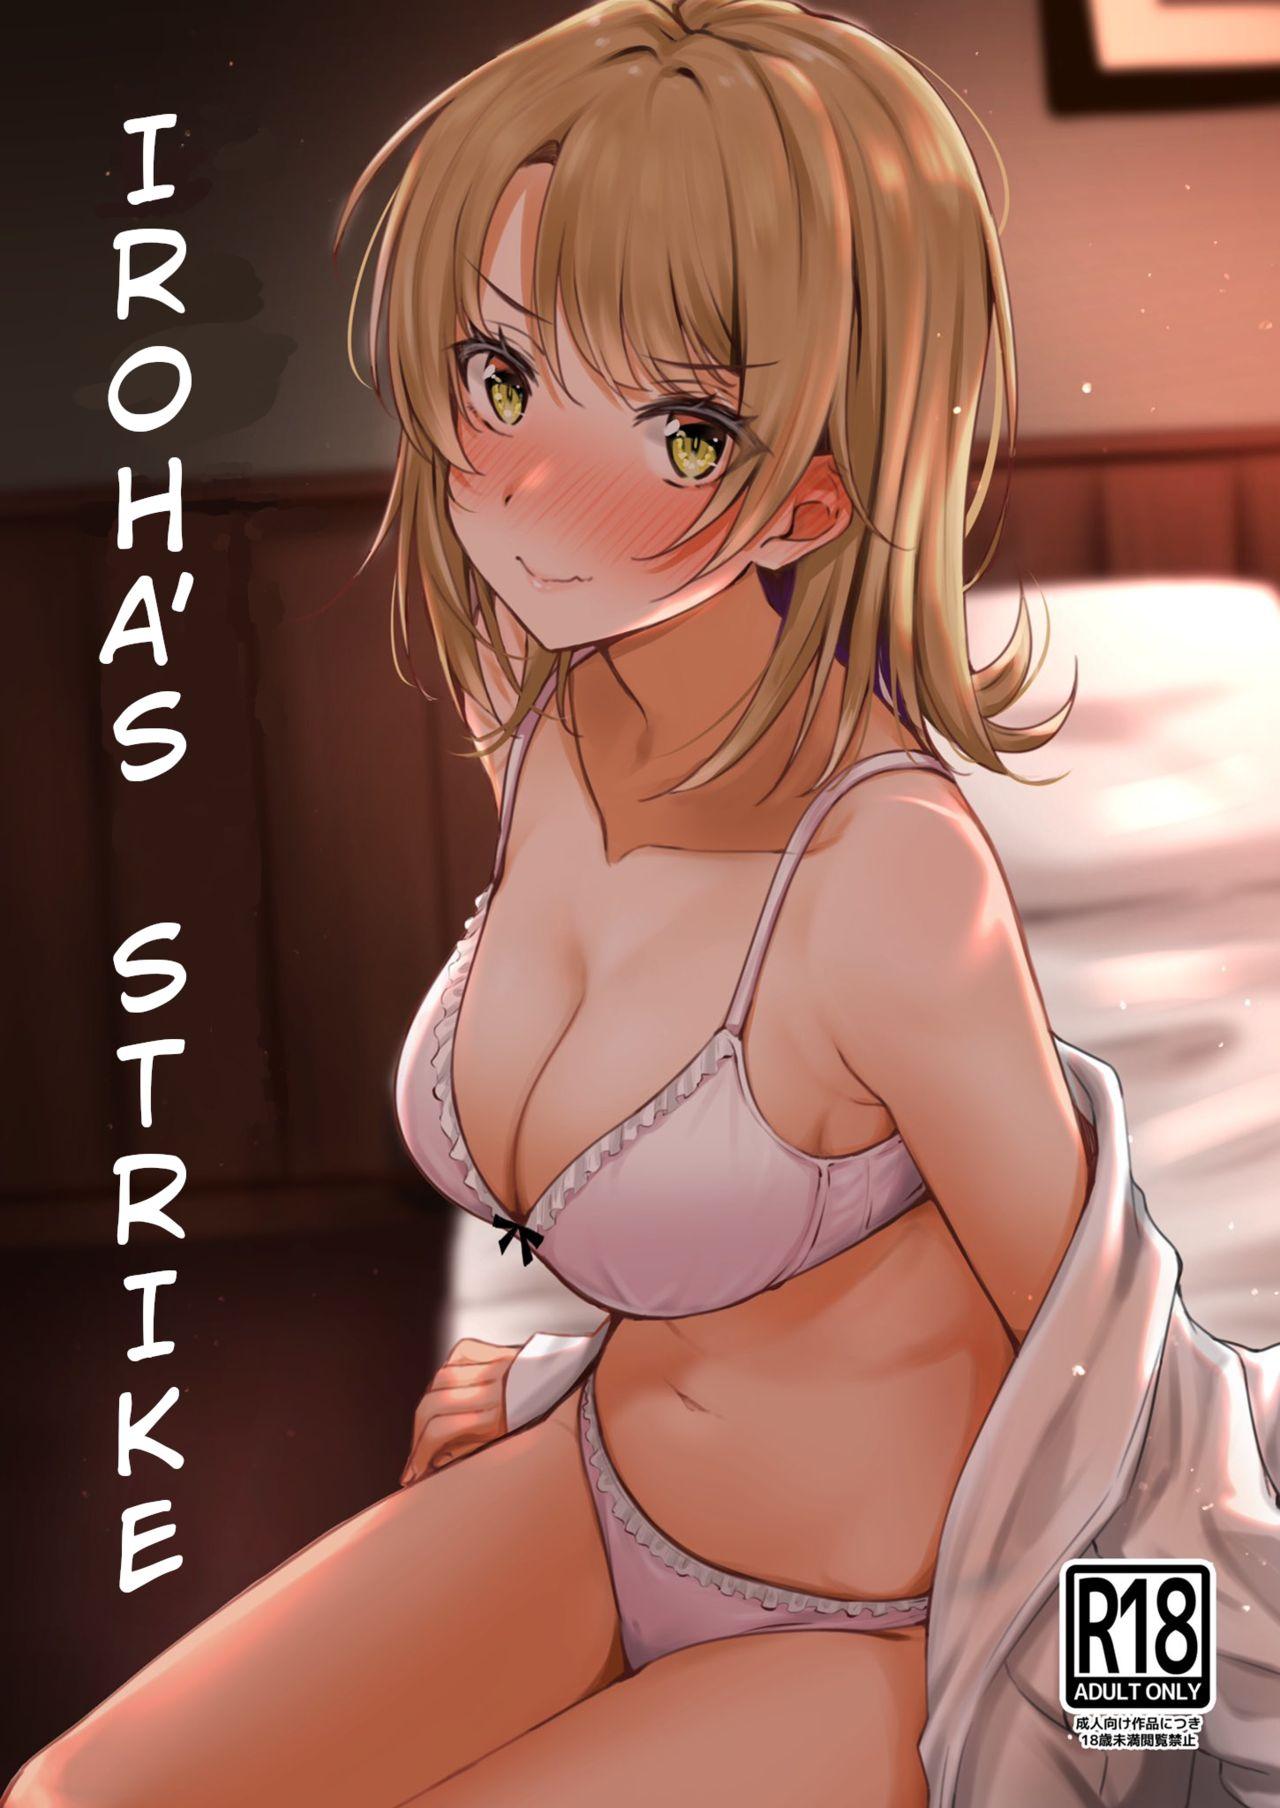 Seduction Porn Irohasu to. | Iroha's Strike - Yahari ore no seishun love come wa machigatteiru Alternative - Picture 1